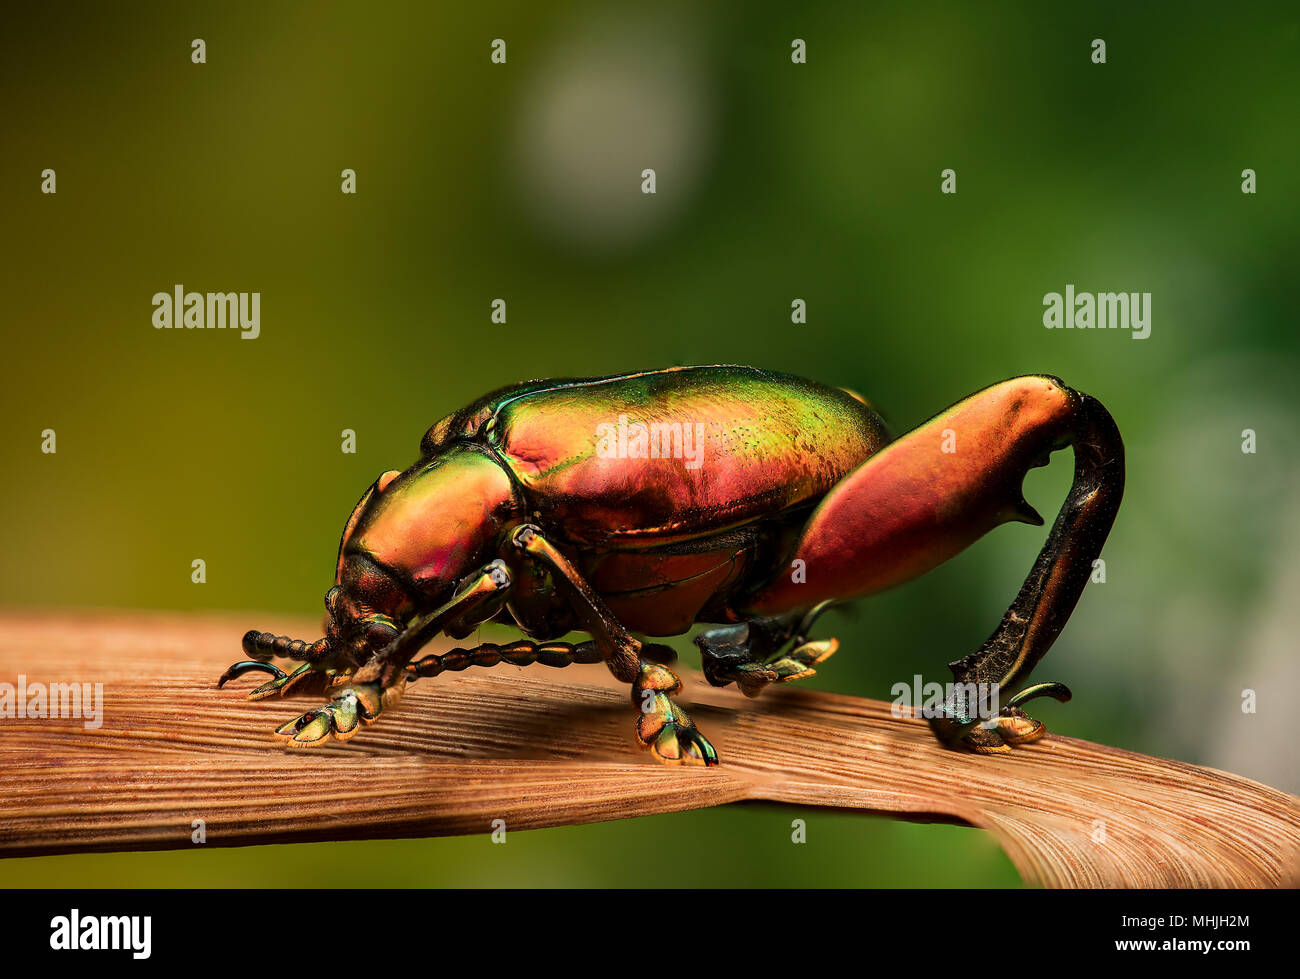 Sagra sp. Pattes de grenouille - beetle Banque D'Images